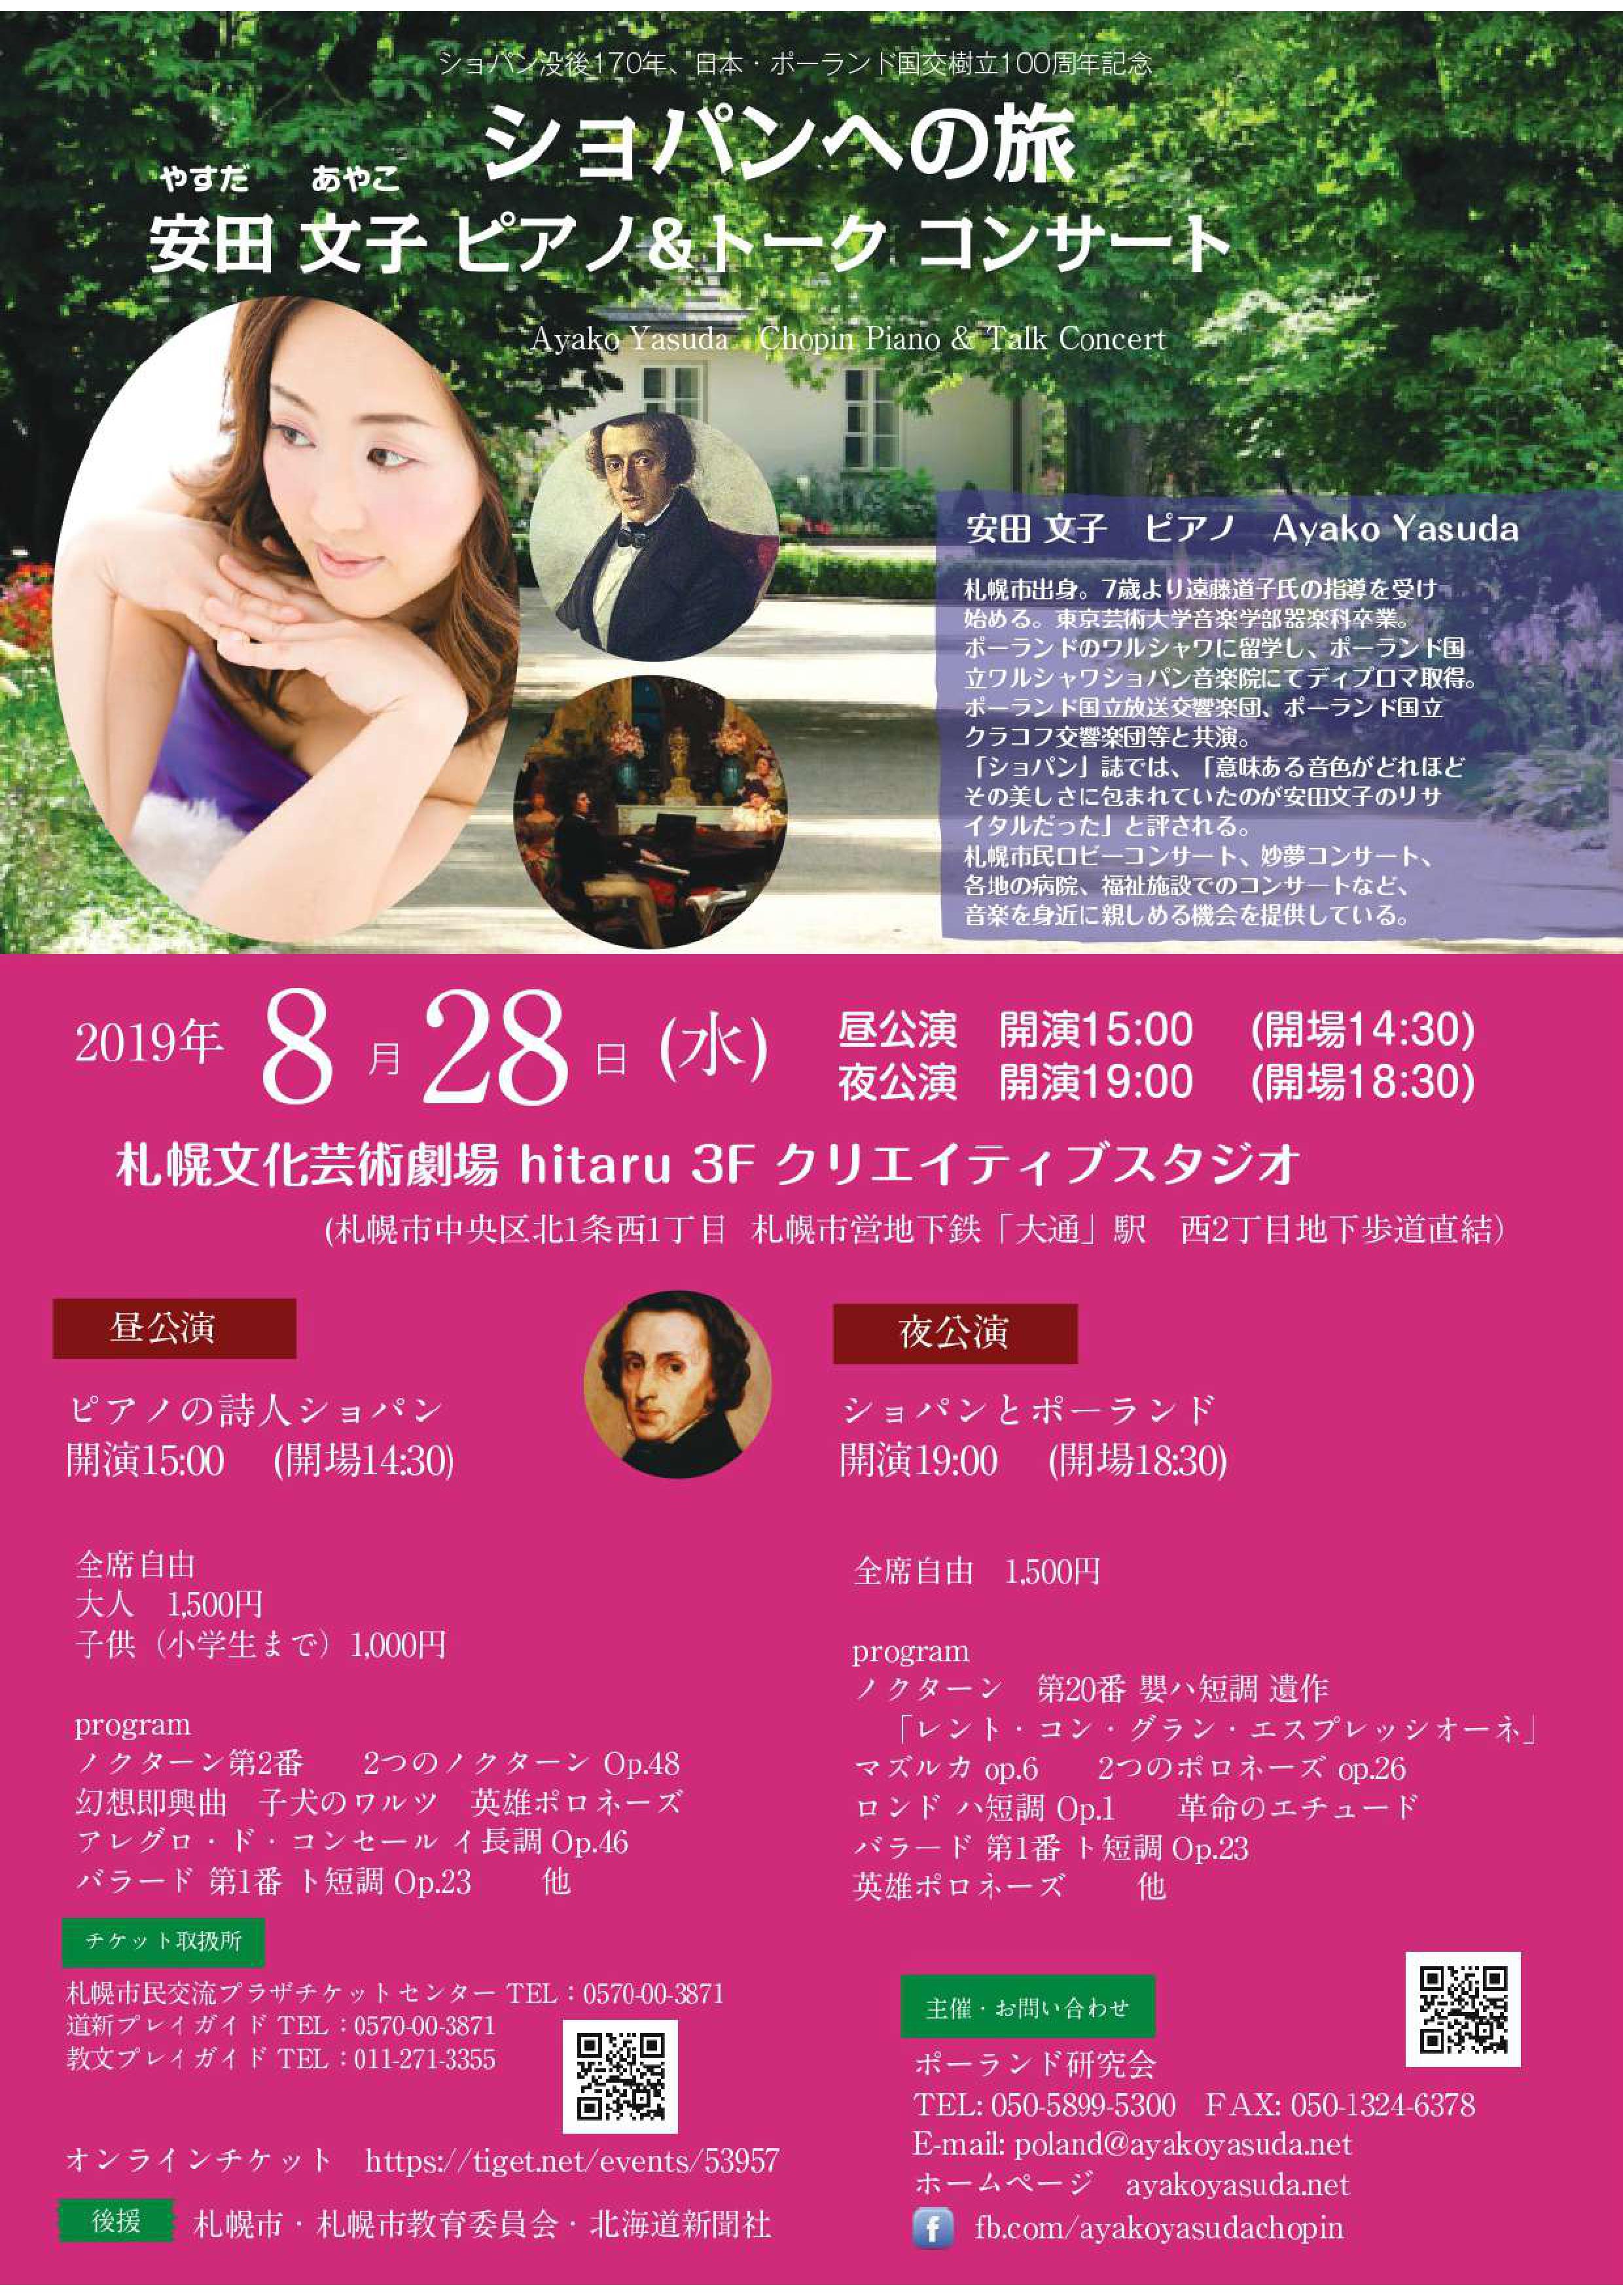 ショパンへの旅 安田文子 ピアノ トークコンサート イベント情報 札幌市民交流プラザ